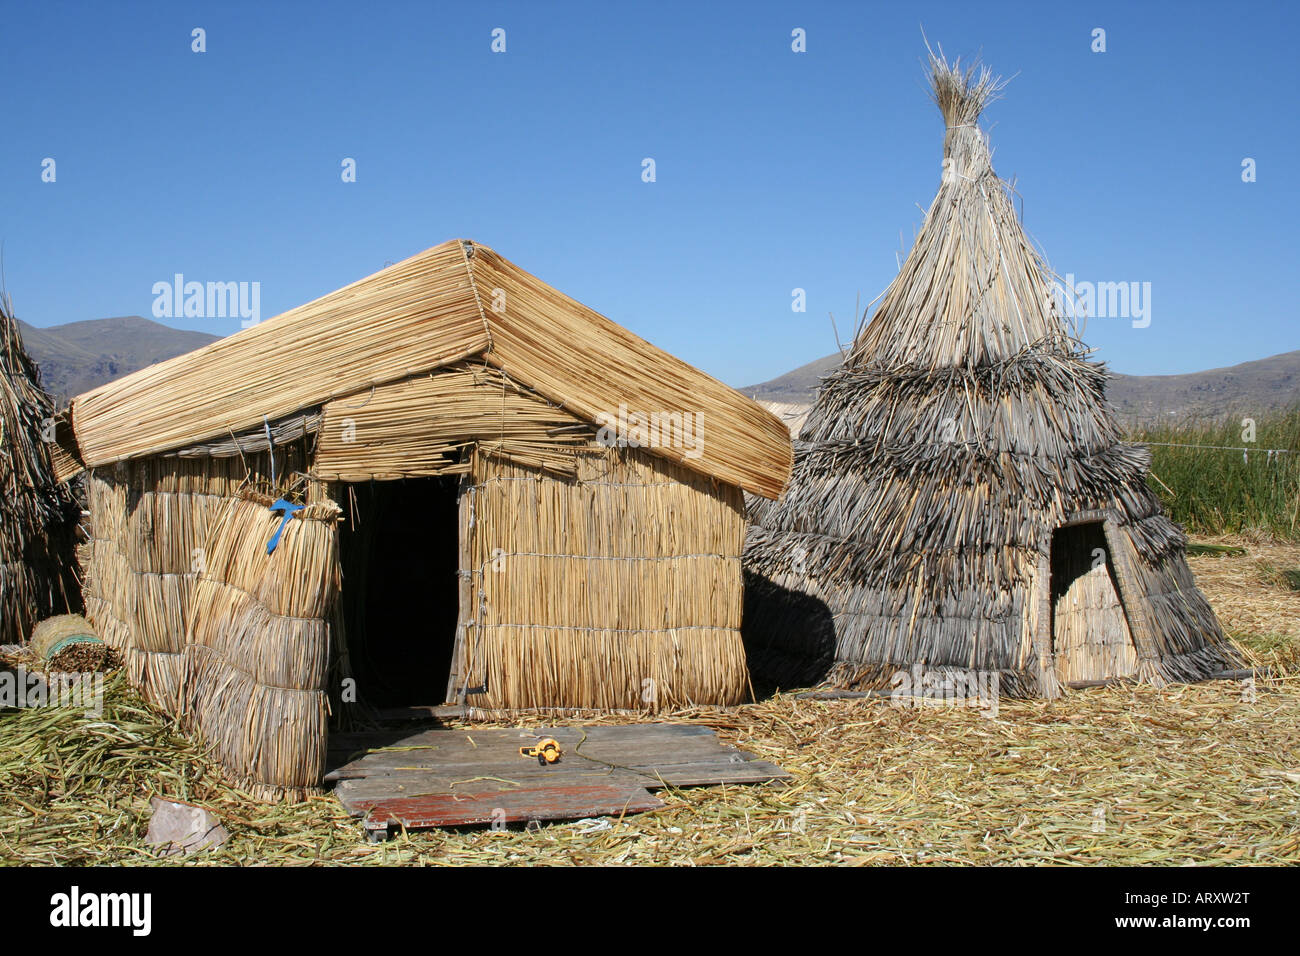 http://c8.alamy.com/comp/ARXW2T/a-house-made-of-reeds-lake-titicaca-island-peru-south-america-ARXW2T.jpg